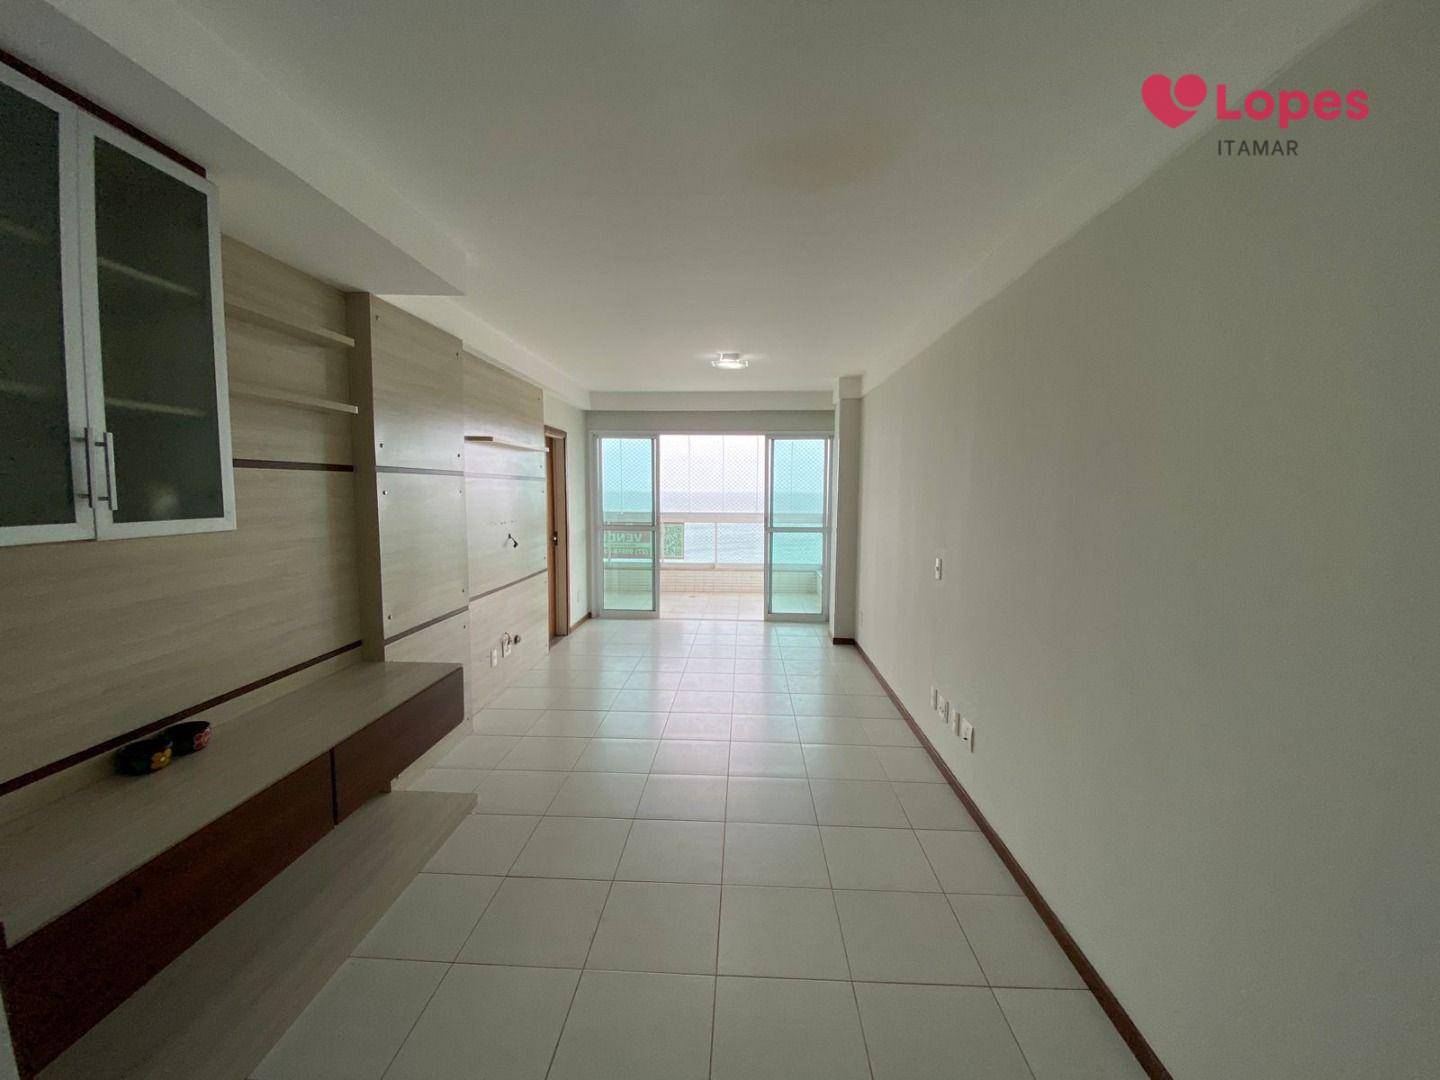 Apartamento, 3 quartos, 103 m² - Foto 3